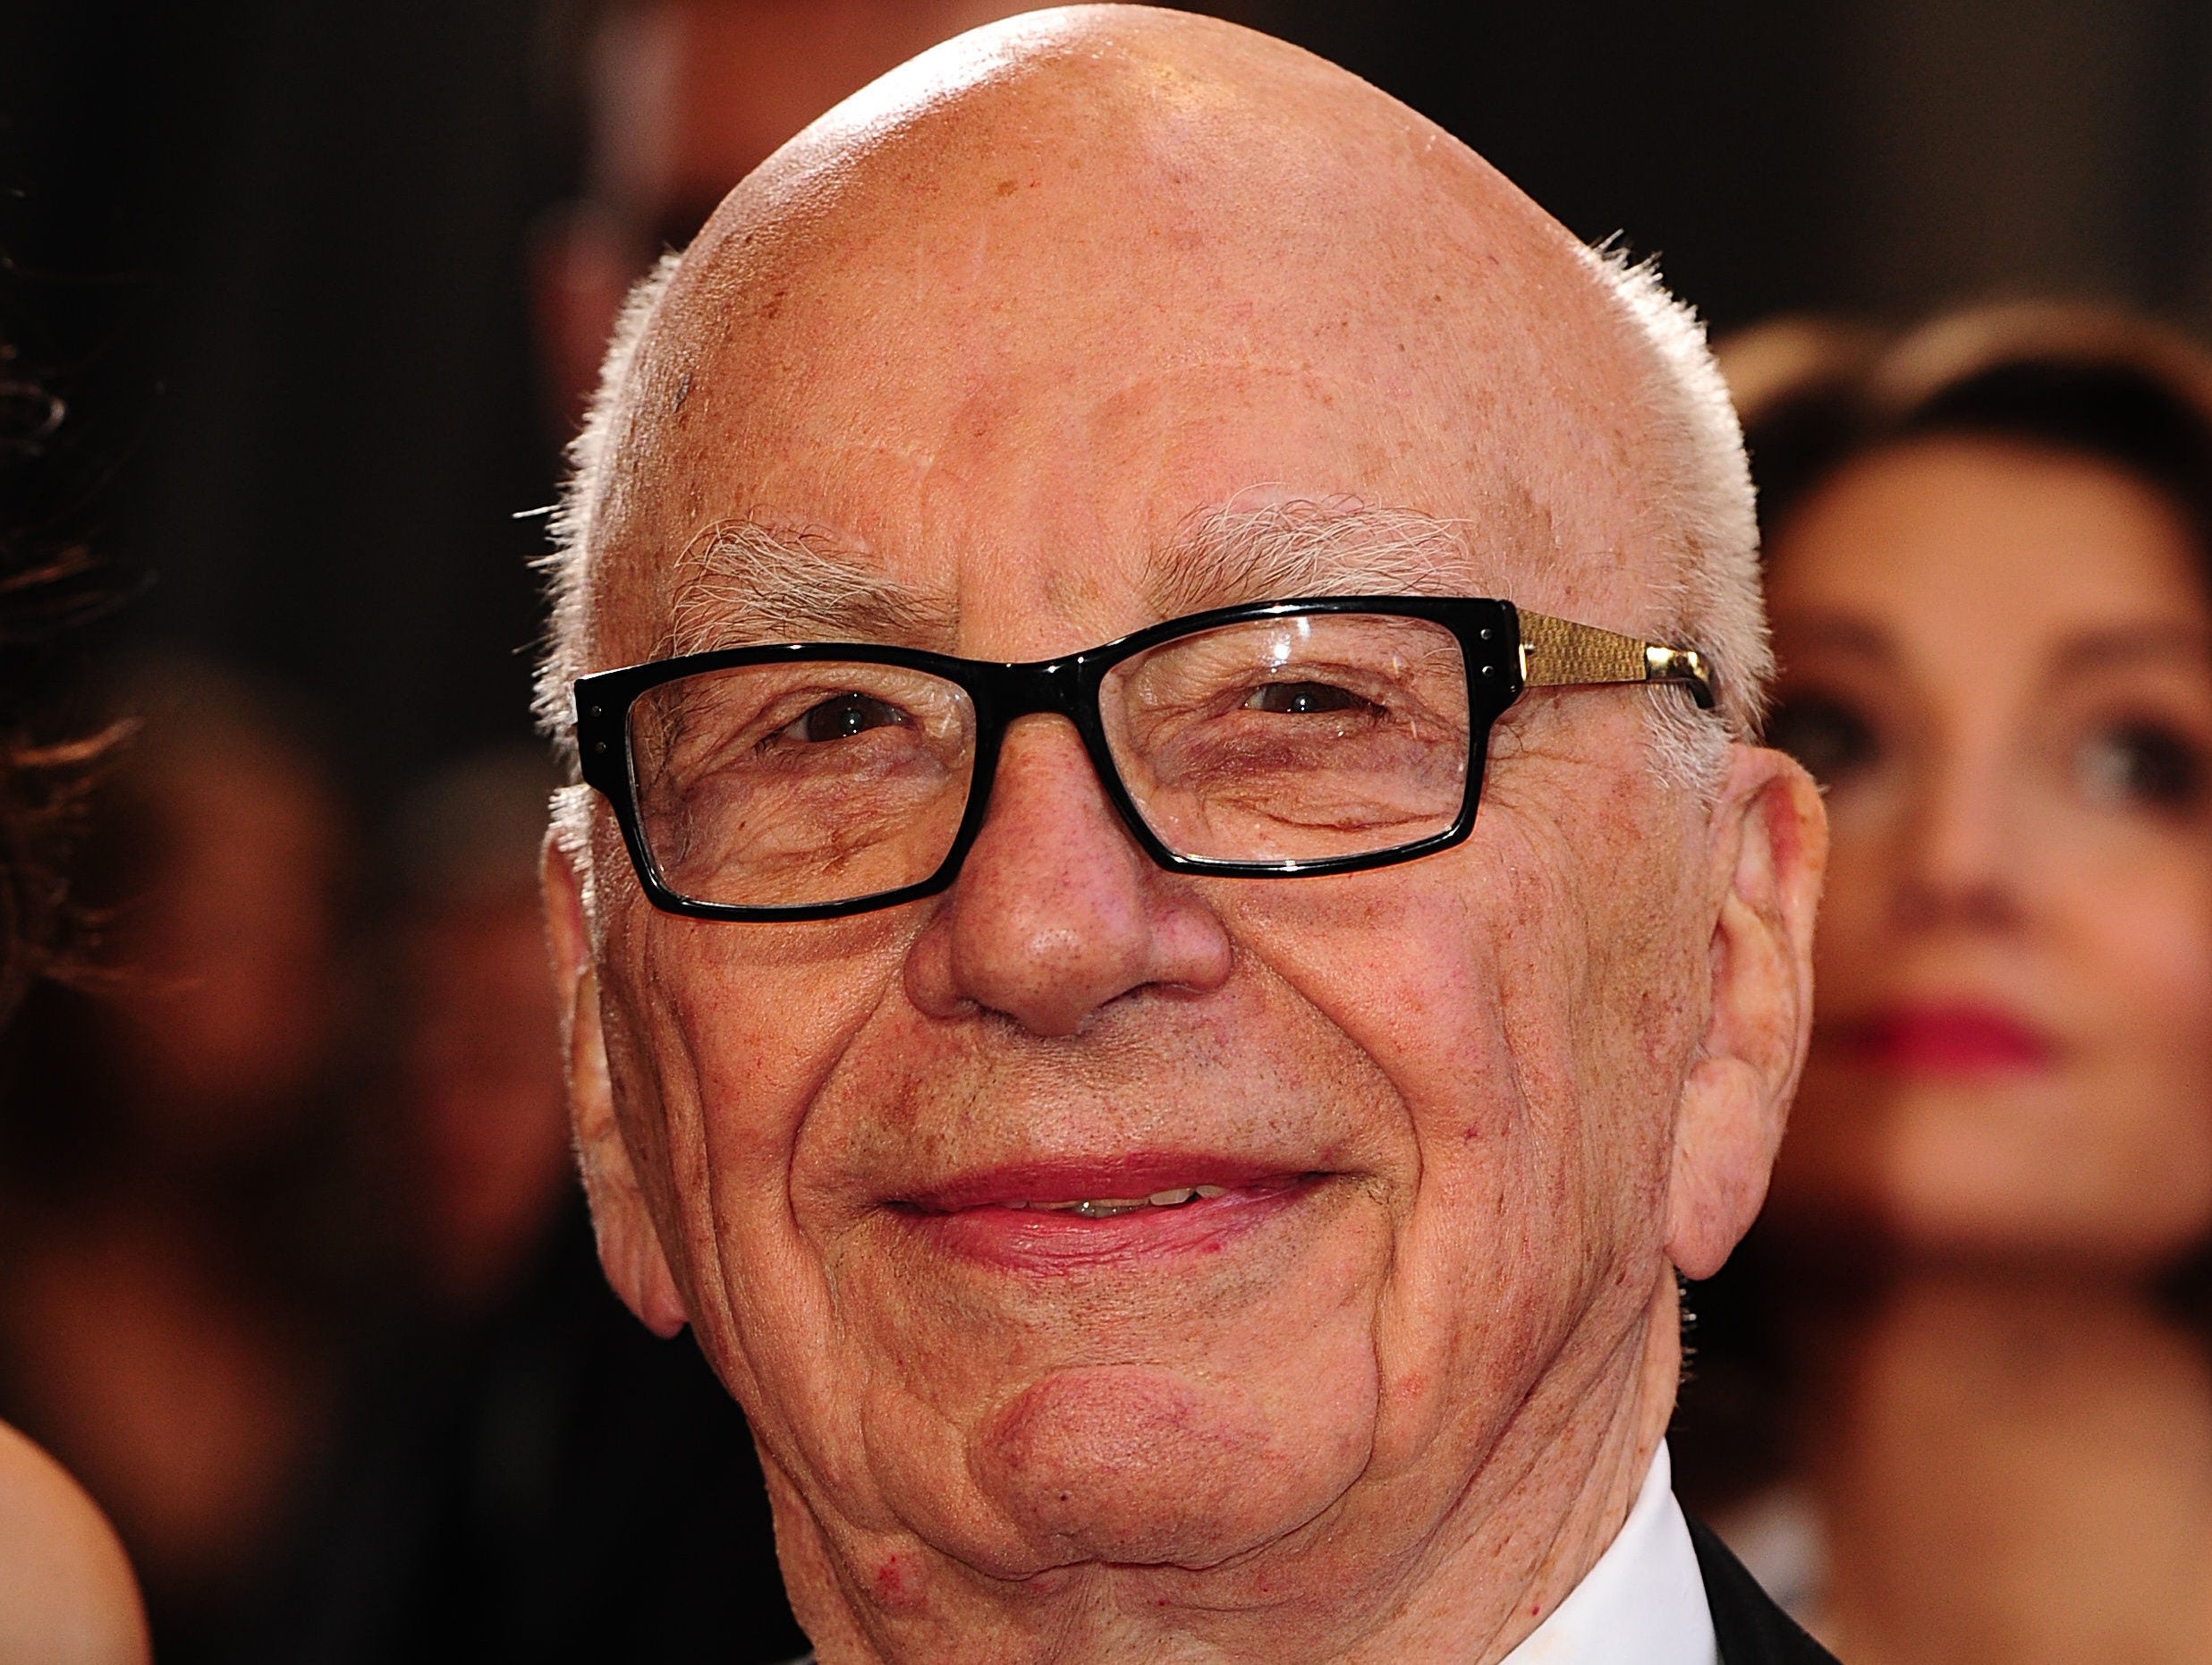 Rupert Murdoch 'not worried' about Fox News despite sexual harassment claims